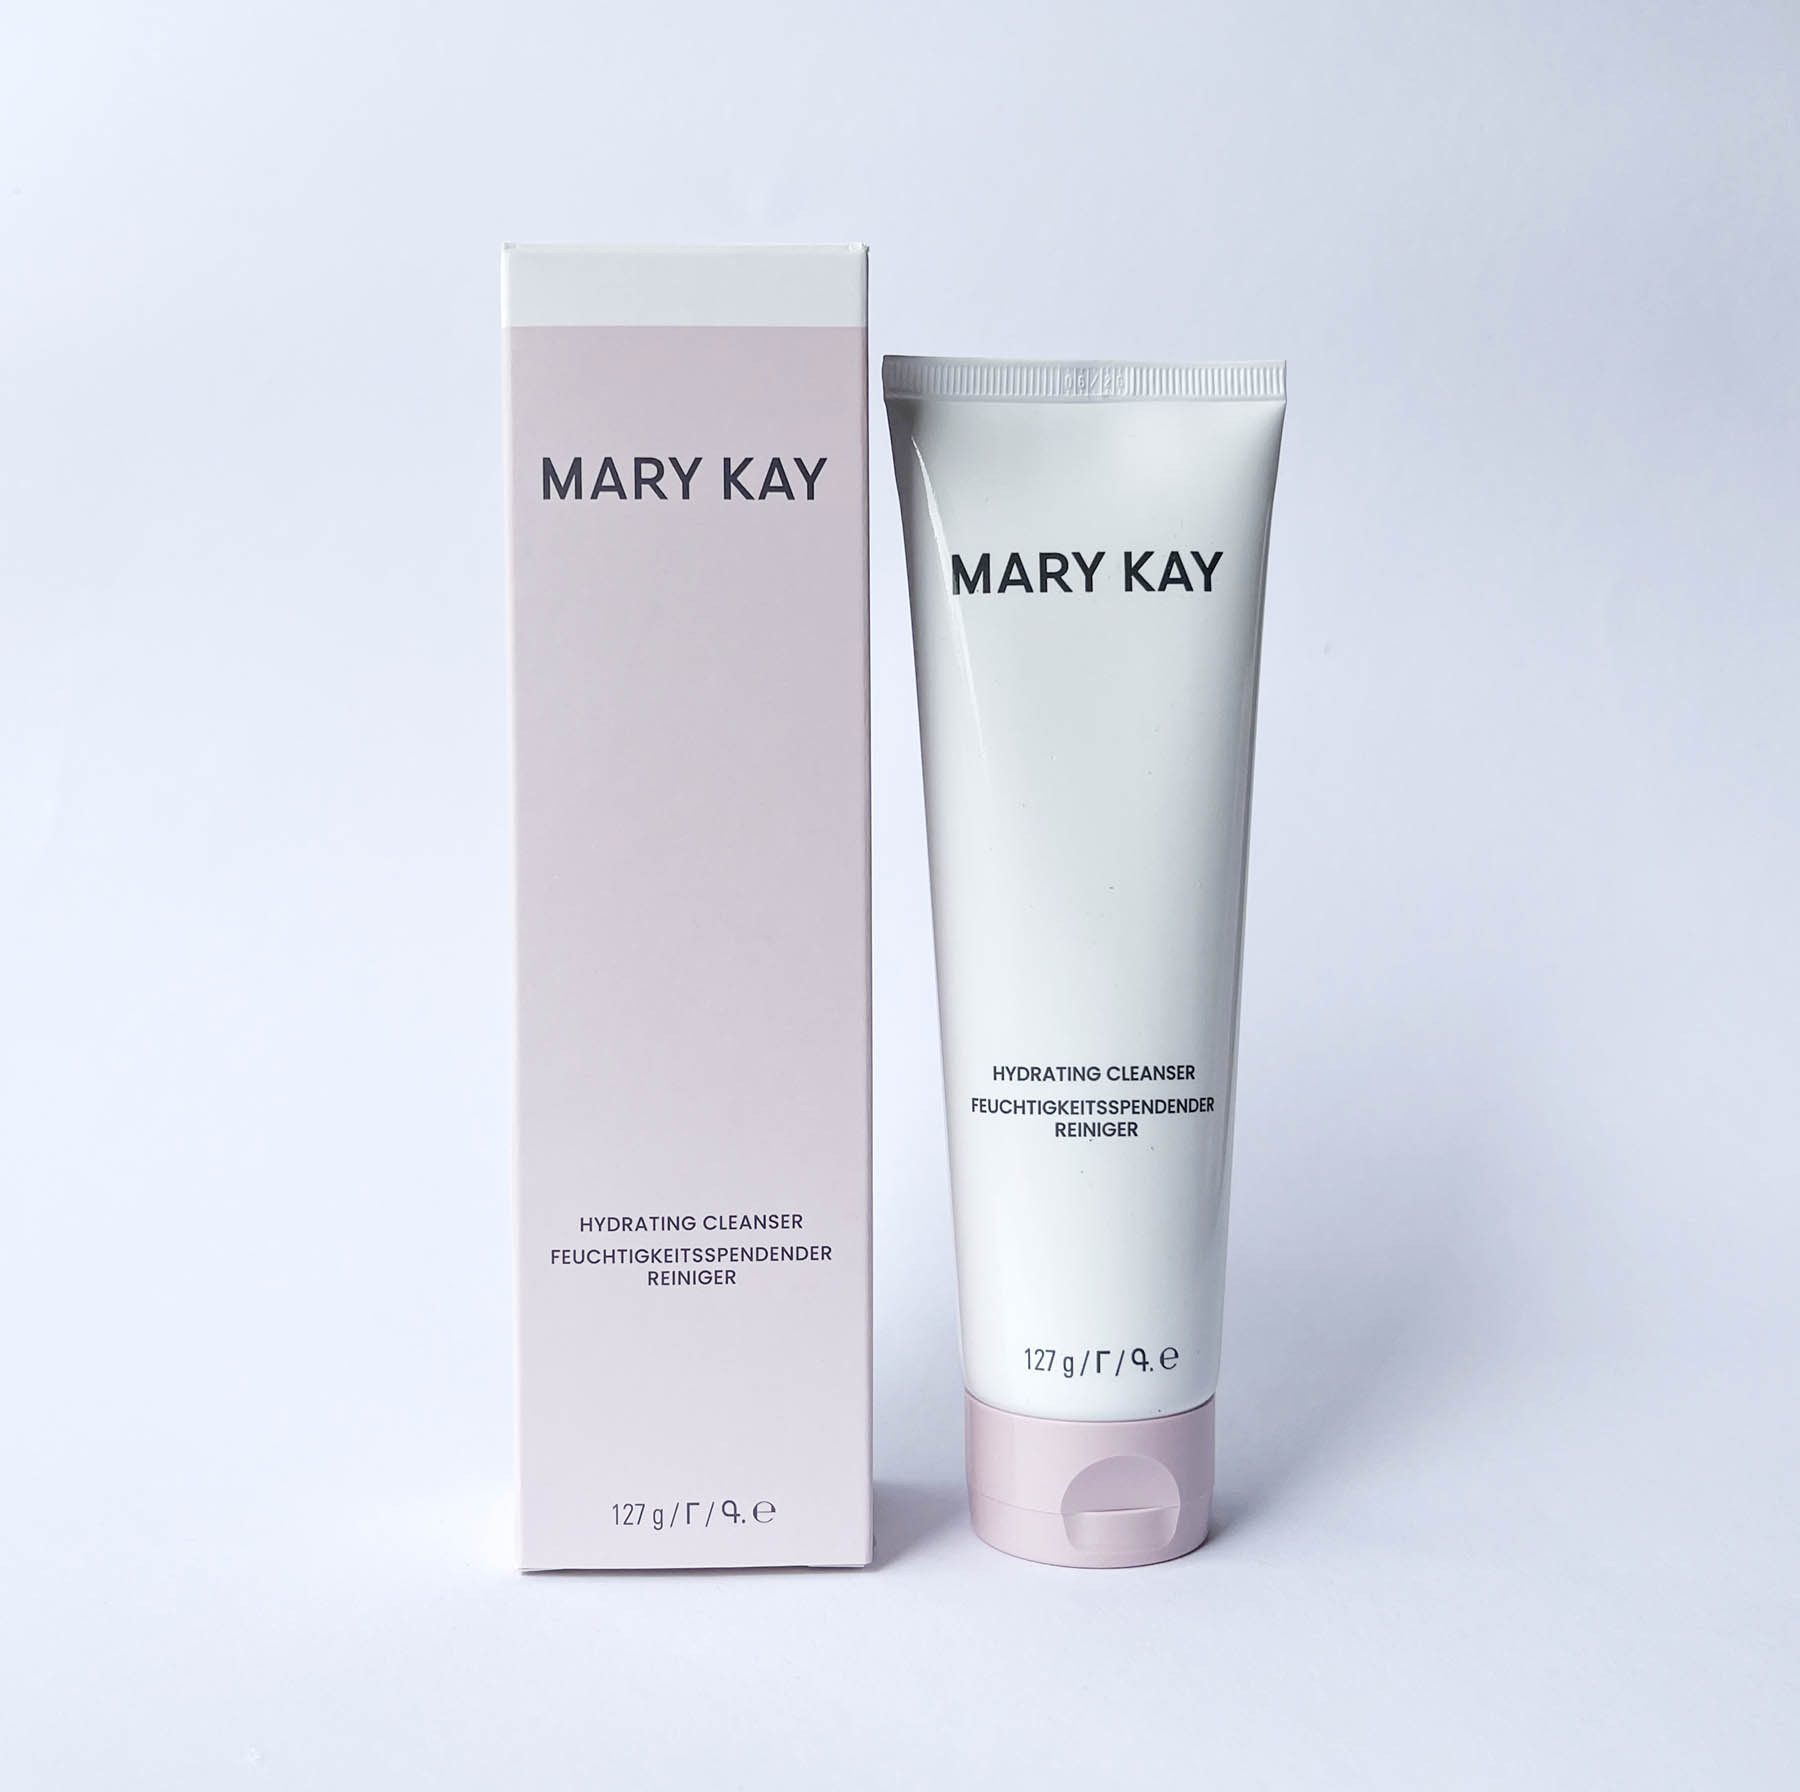 Mary Kay Gesichts-Reinigungsschaum Hydrating Cleanser feuchtigkeitsspendender Reiniger 128g